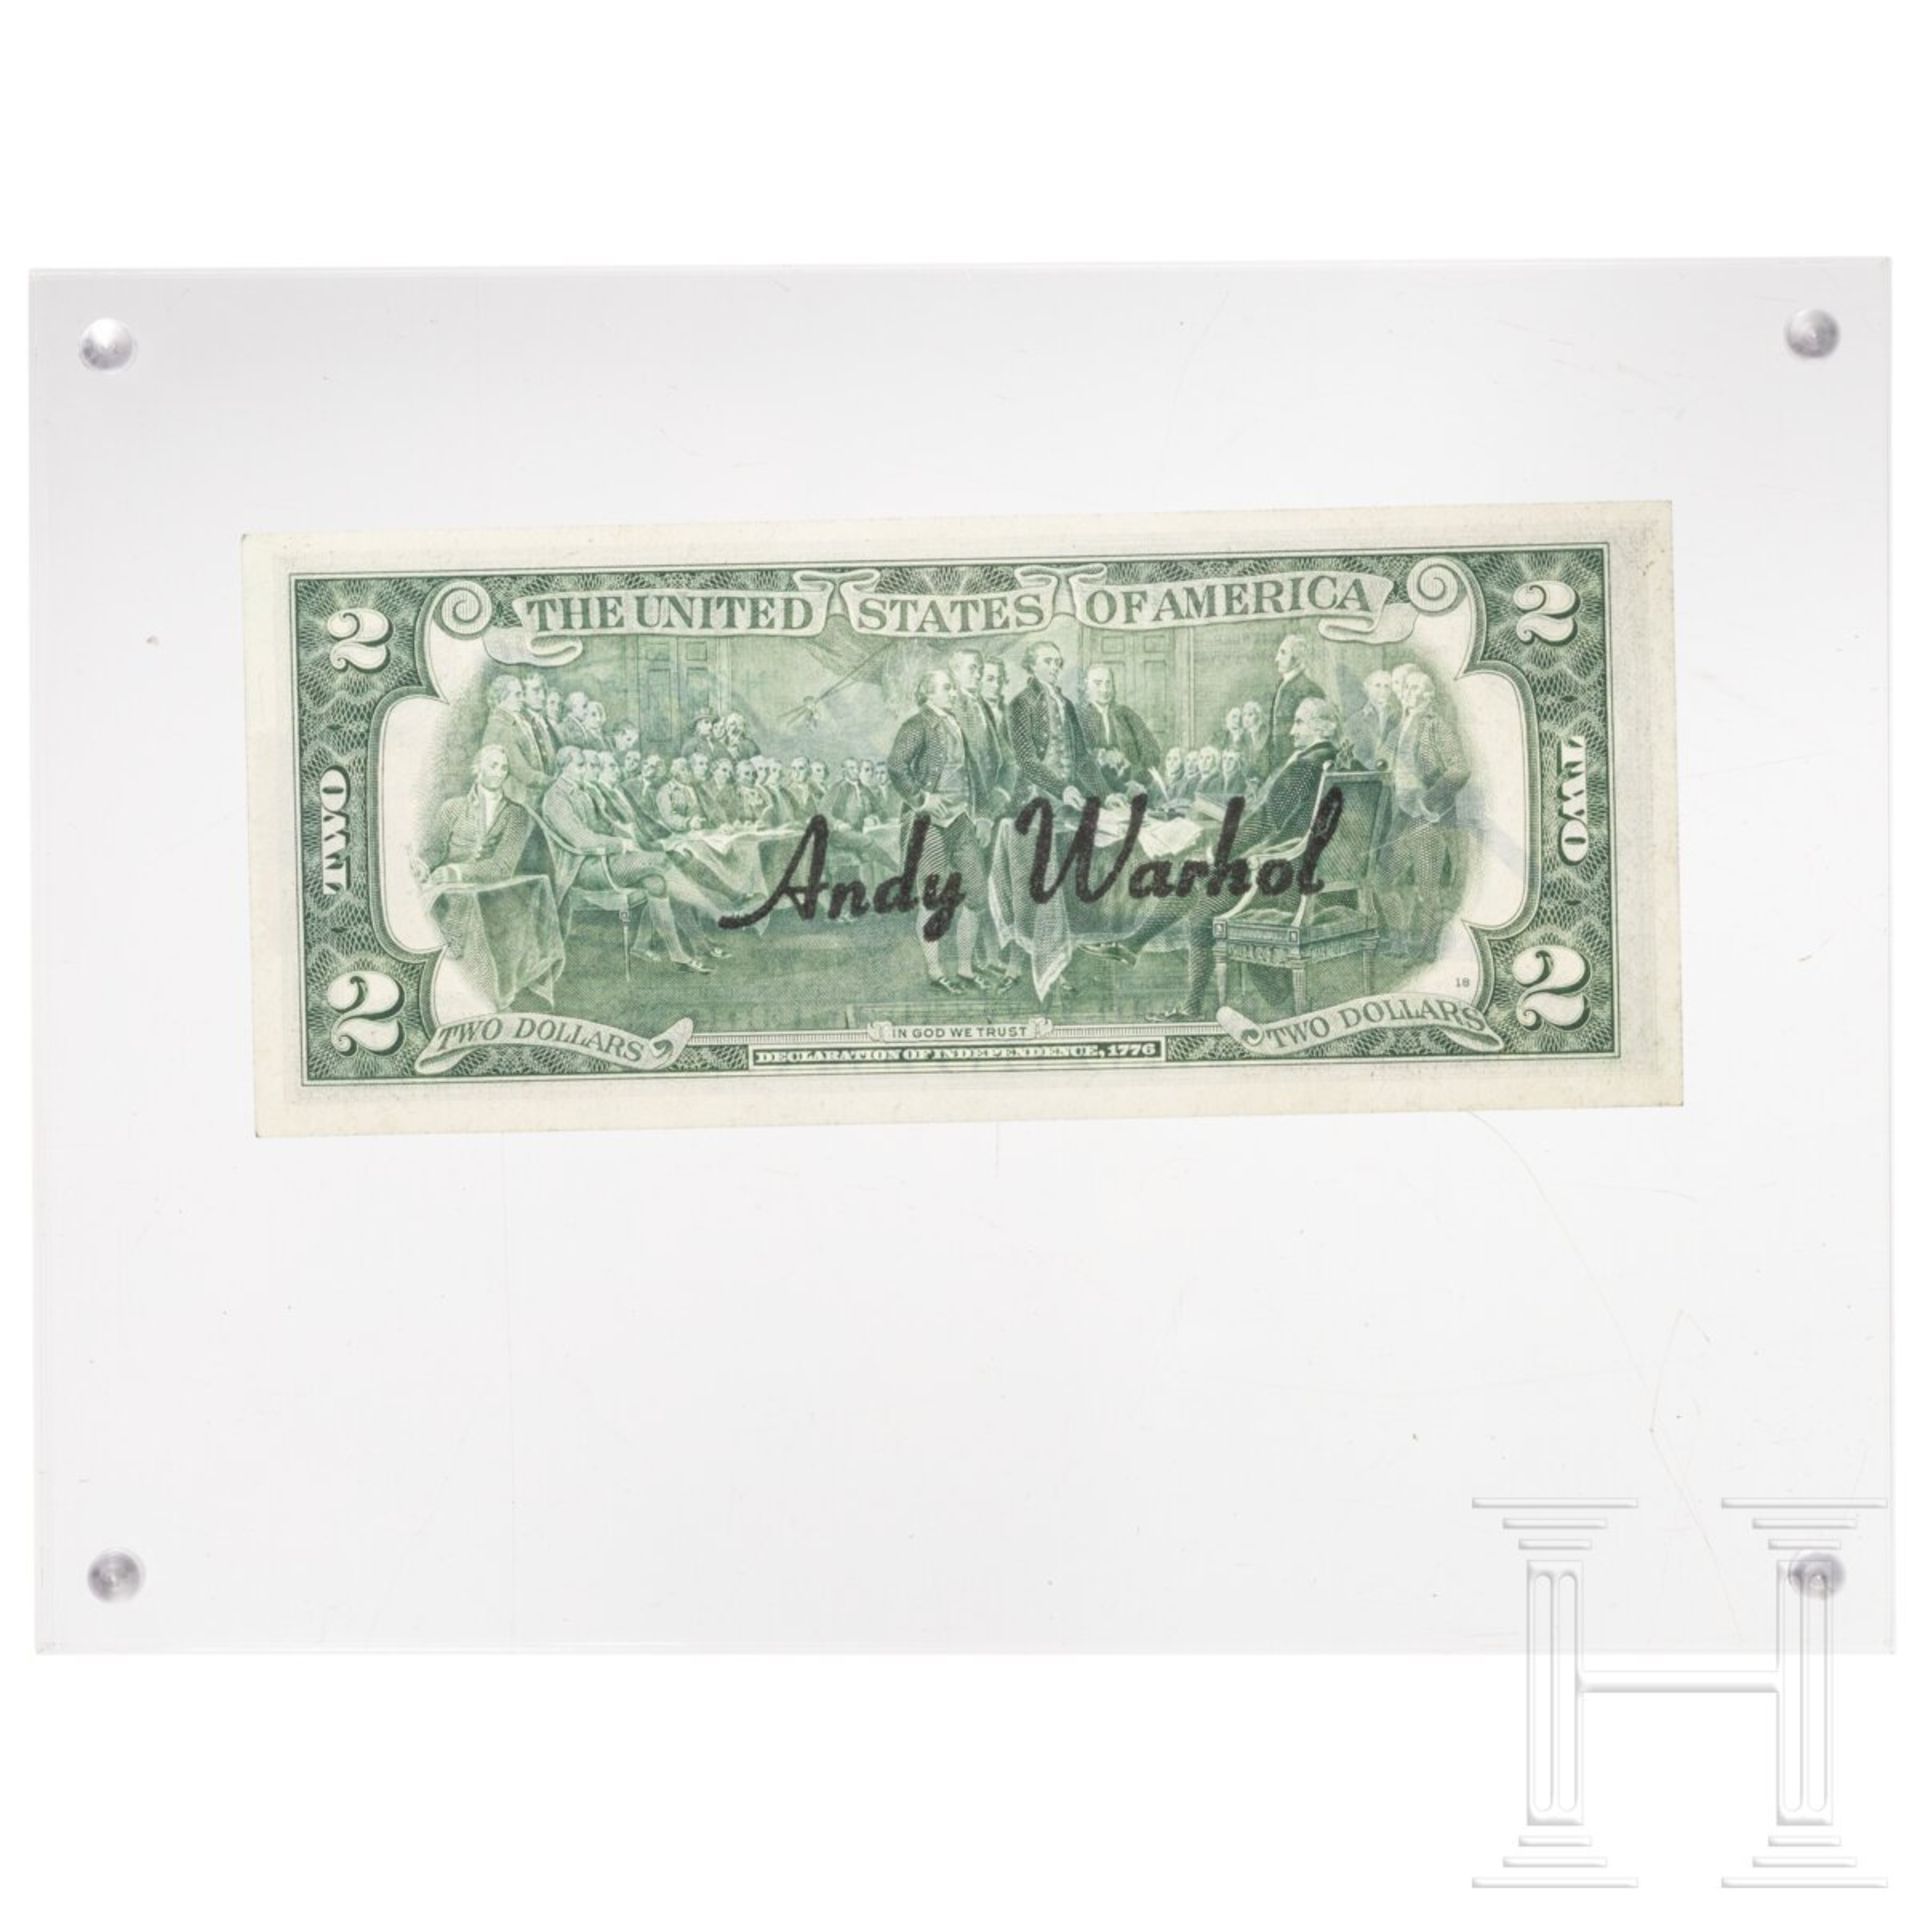 Zwei-Dollar-Schein, signiert "Andy Warhol", 1976 - Bild 2 aus 3